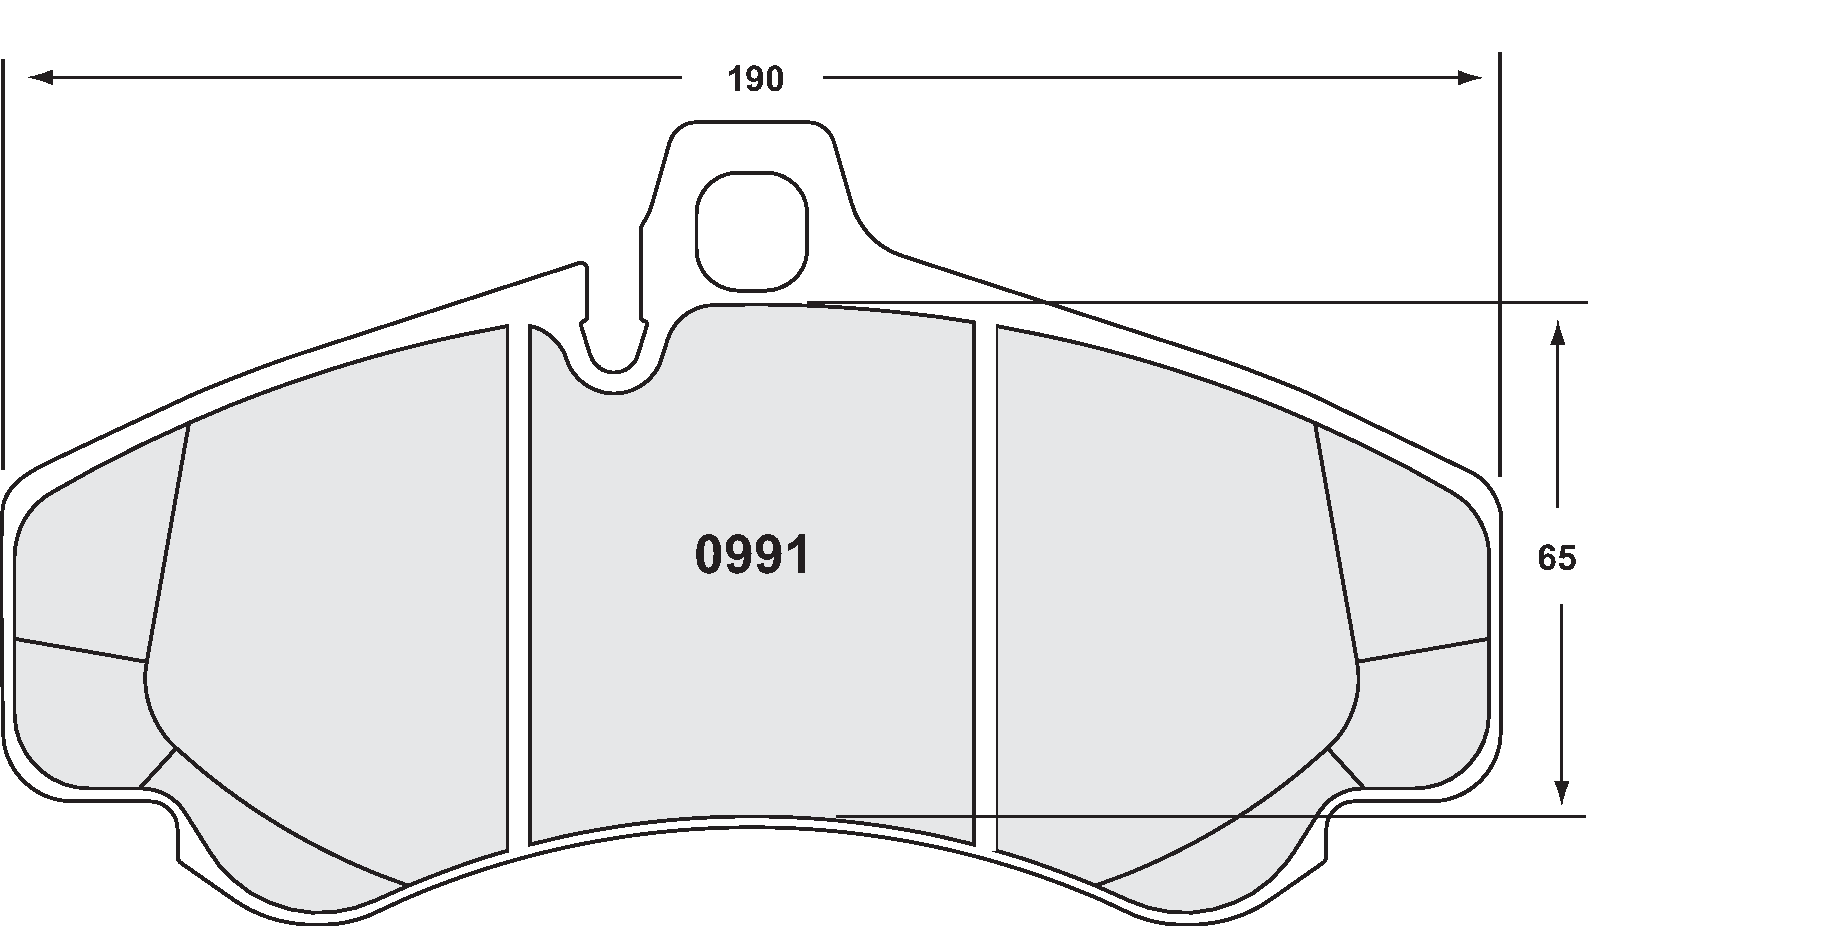 PFC 0991.08.17.44 Гальмівні колодки передні RACE 08 CMPD 17mm для PORSCHE 996 (GT2 / GT3) (під 380мм) Photo-1 